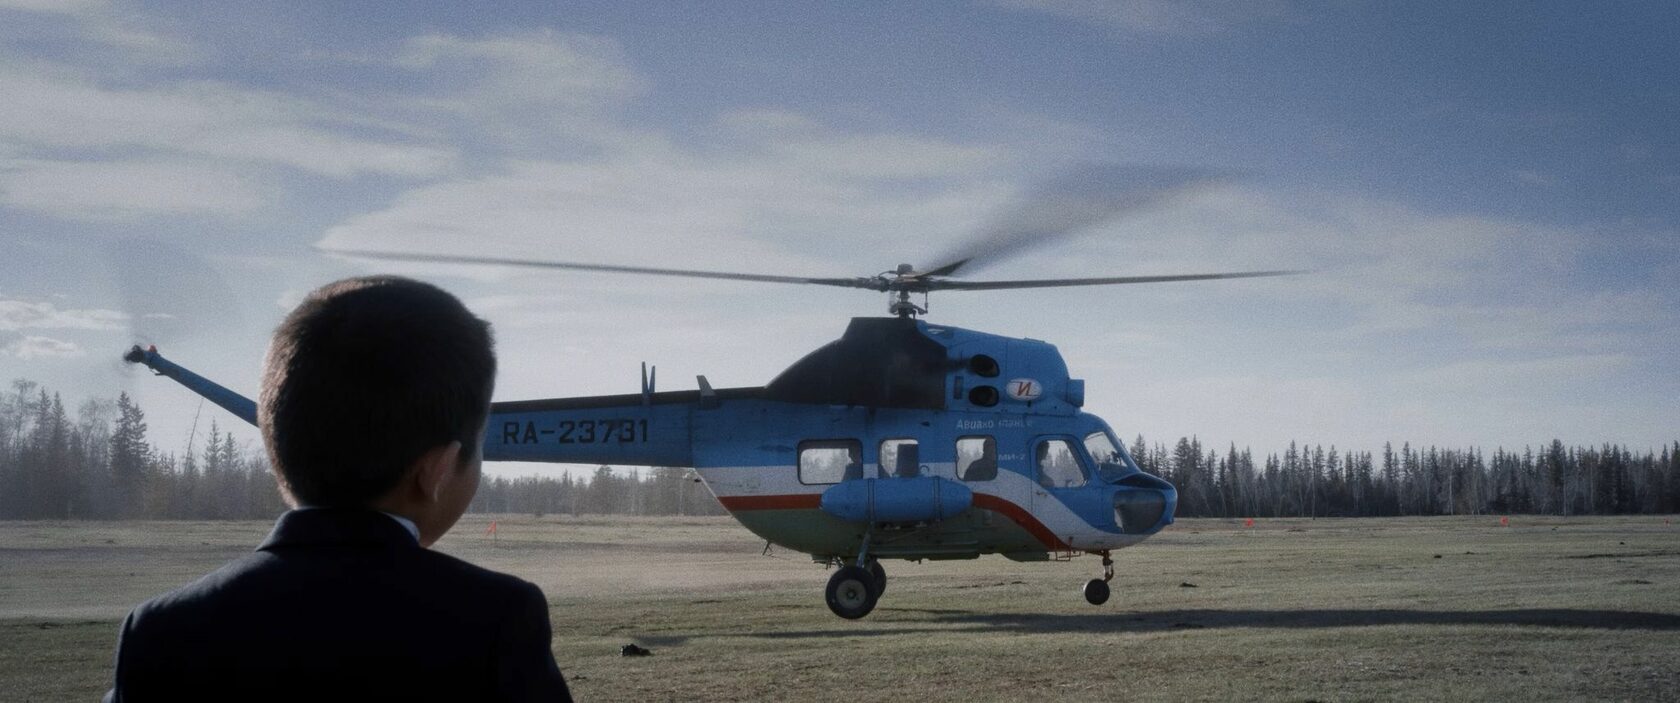 Премьера фильма «Вертолет» состоится в Якутии 17 февраля